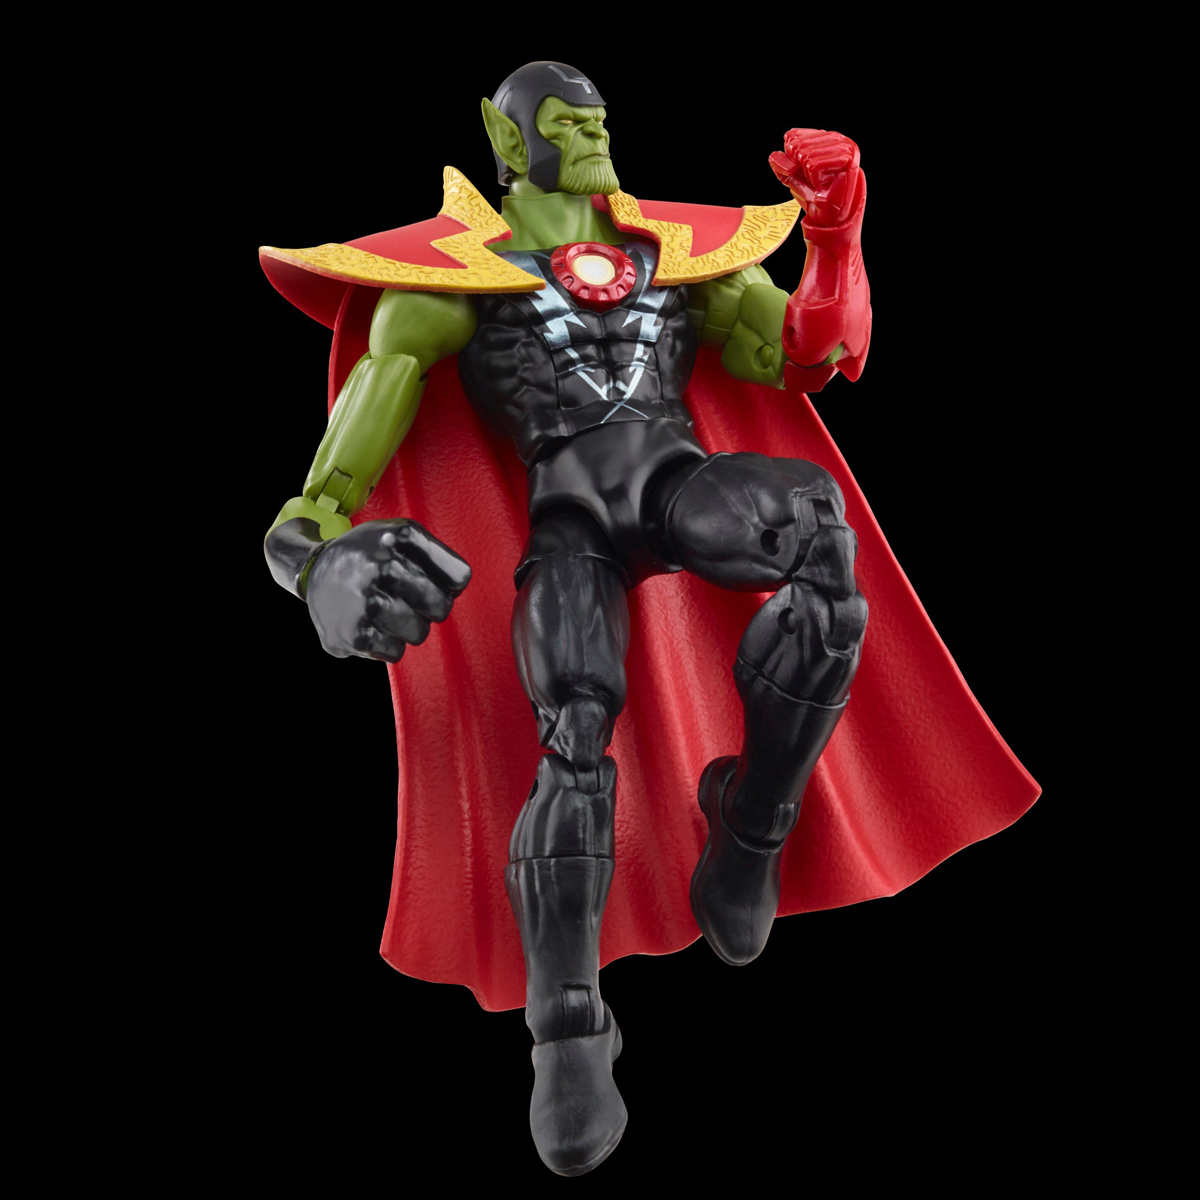 Marvel-Legends-Skrull-Queen-and-Super-Skrull-Action-Figures-15